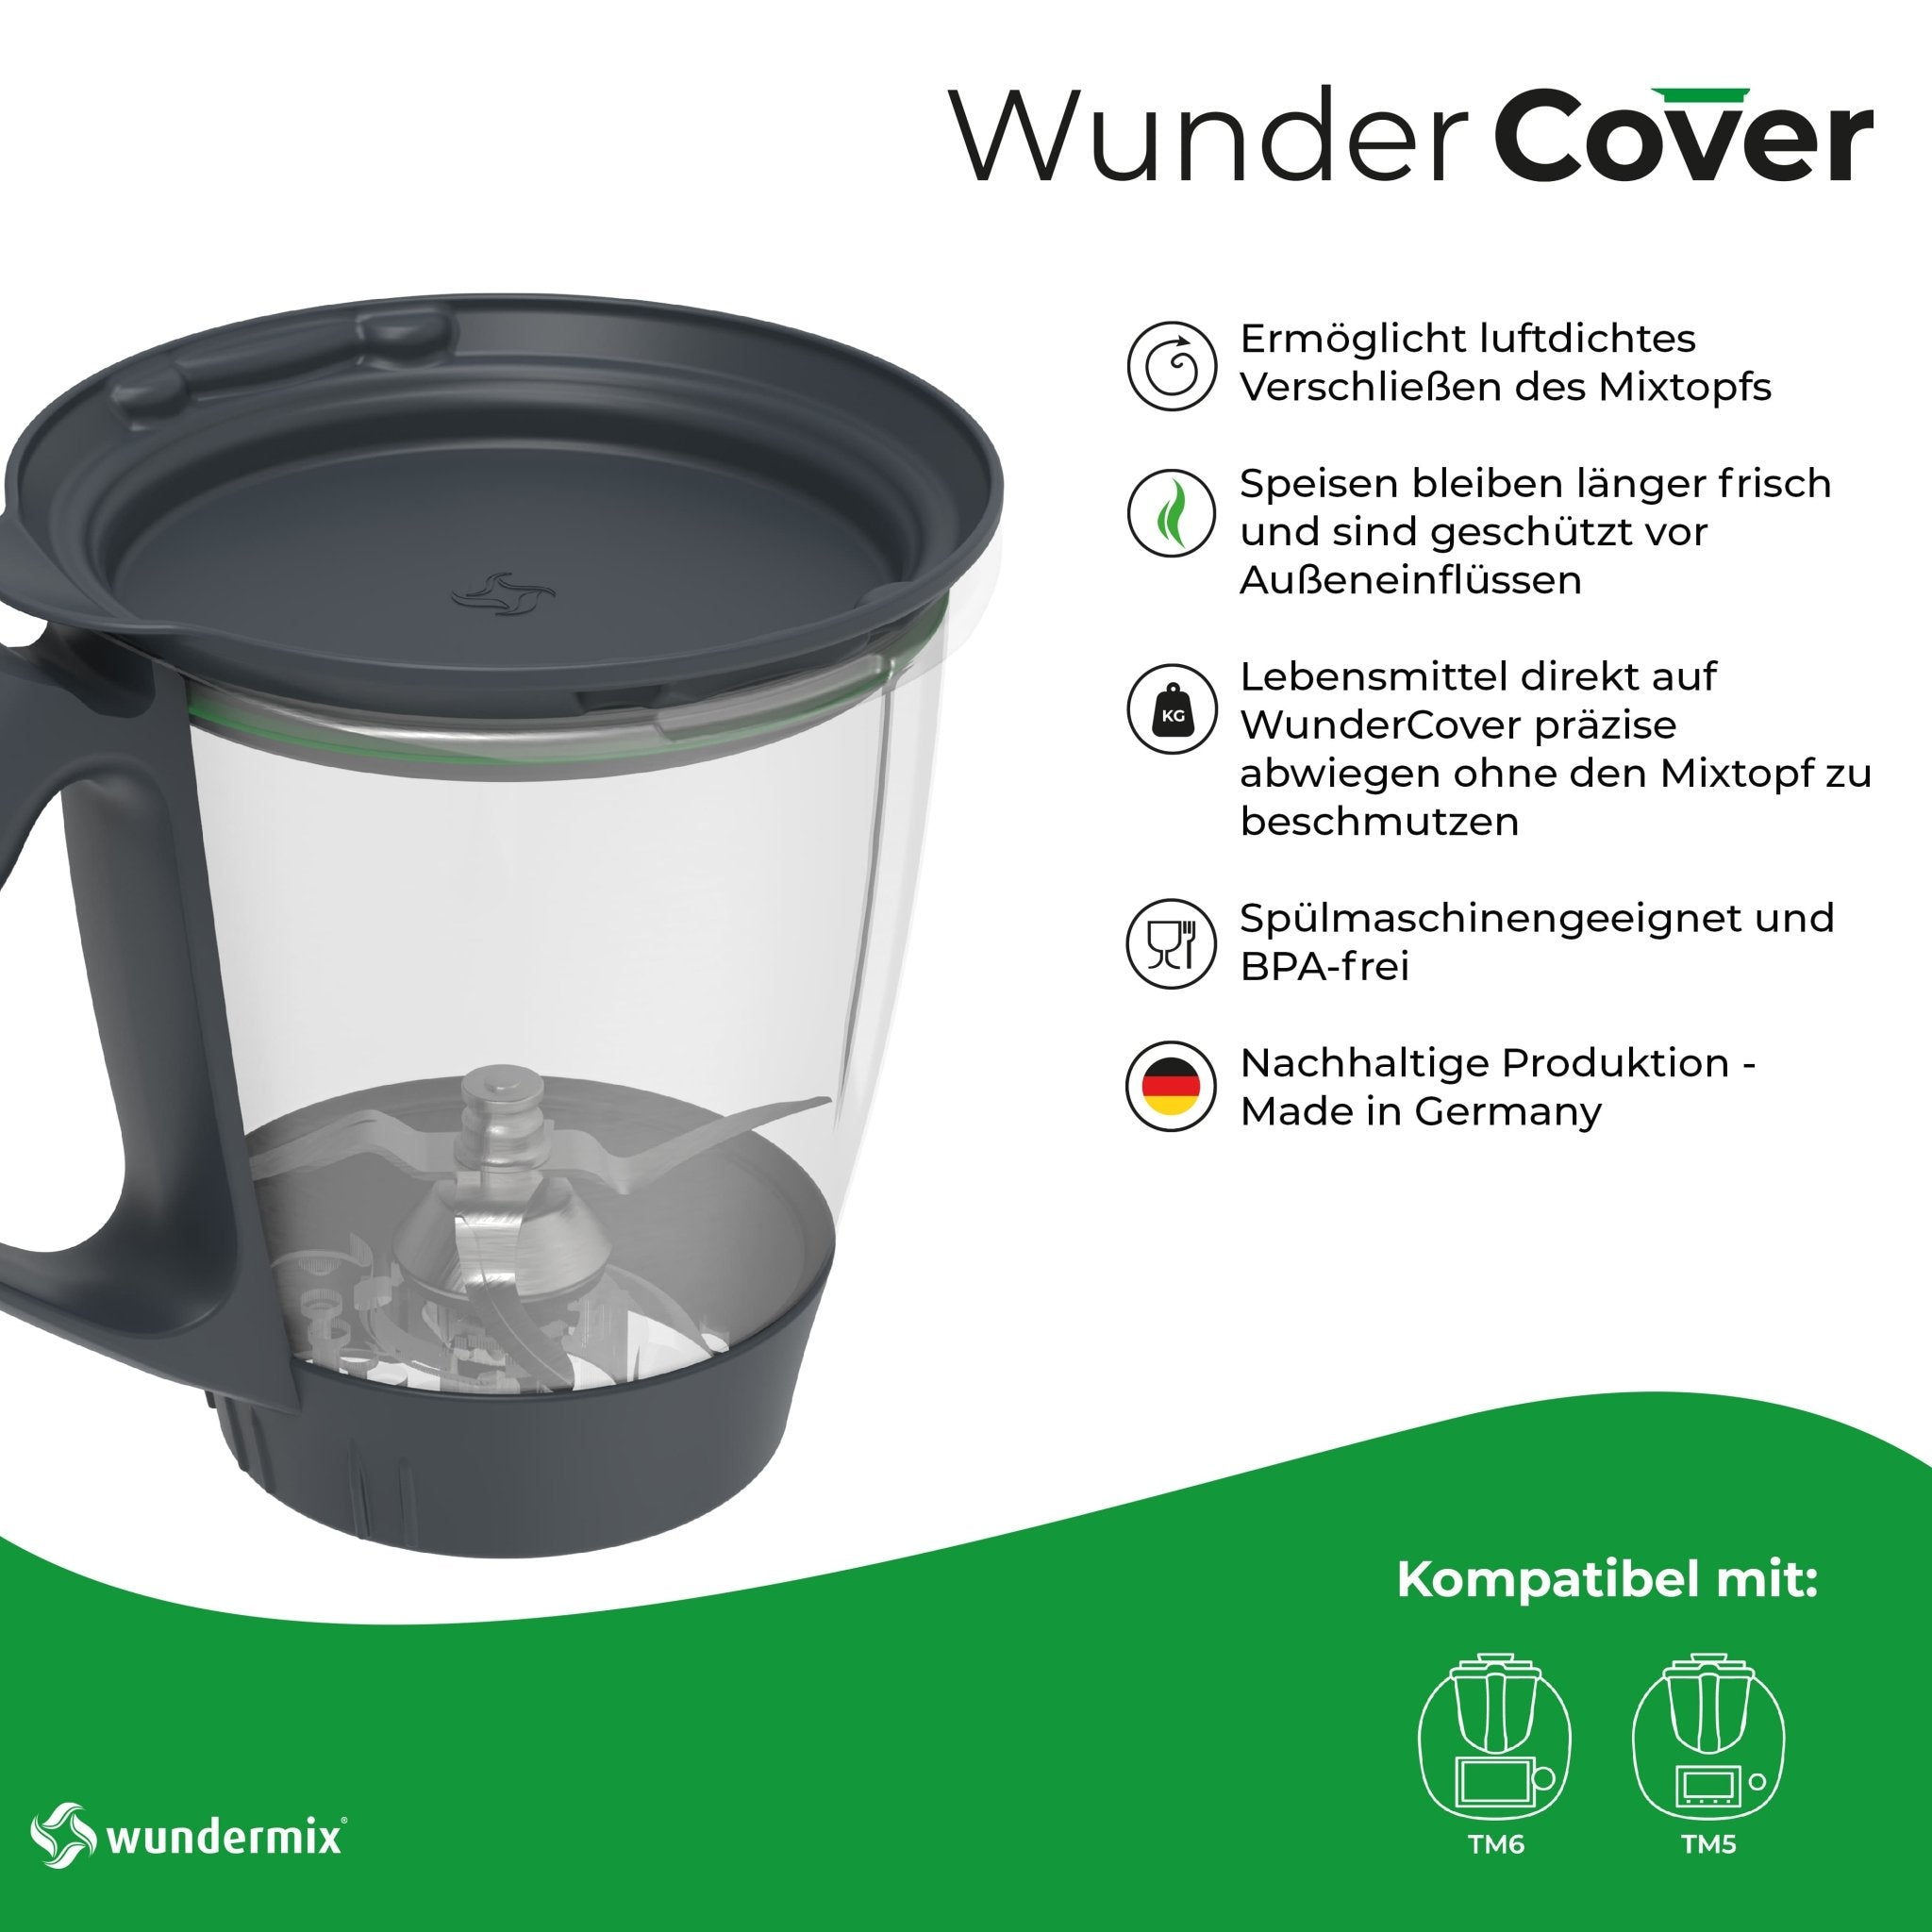 WunderCover® | Frischhalte-Deckel mit Wiegefunktion für Thermomix TM6, TM5 - Wundermix GmbH